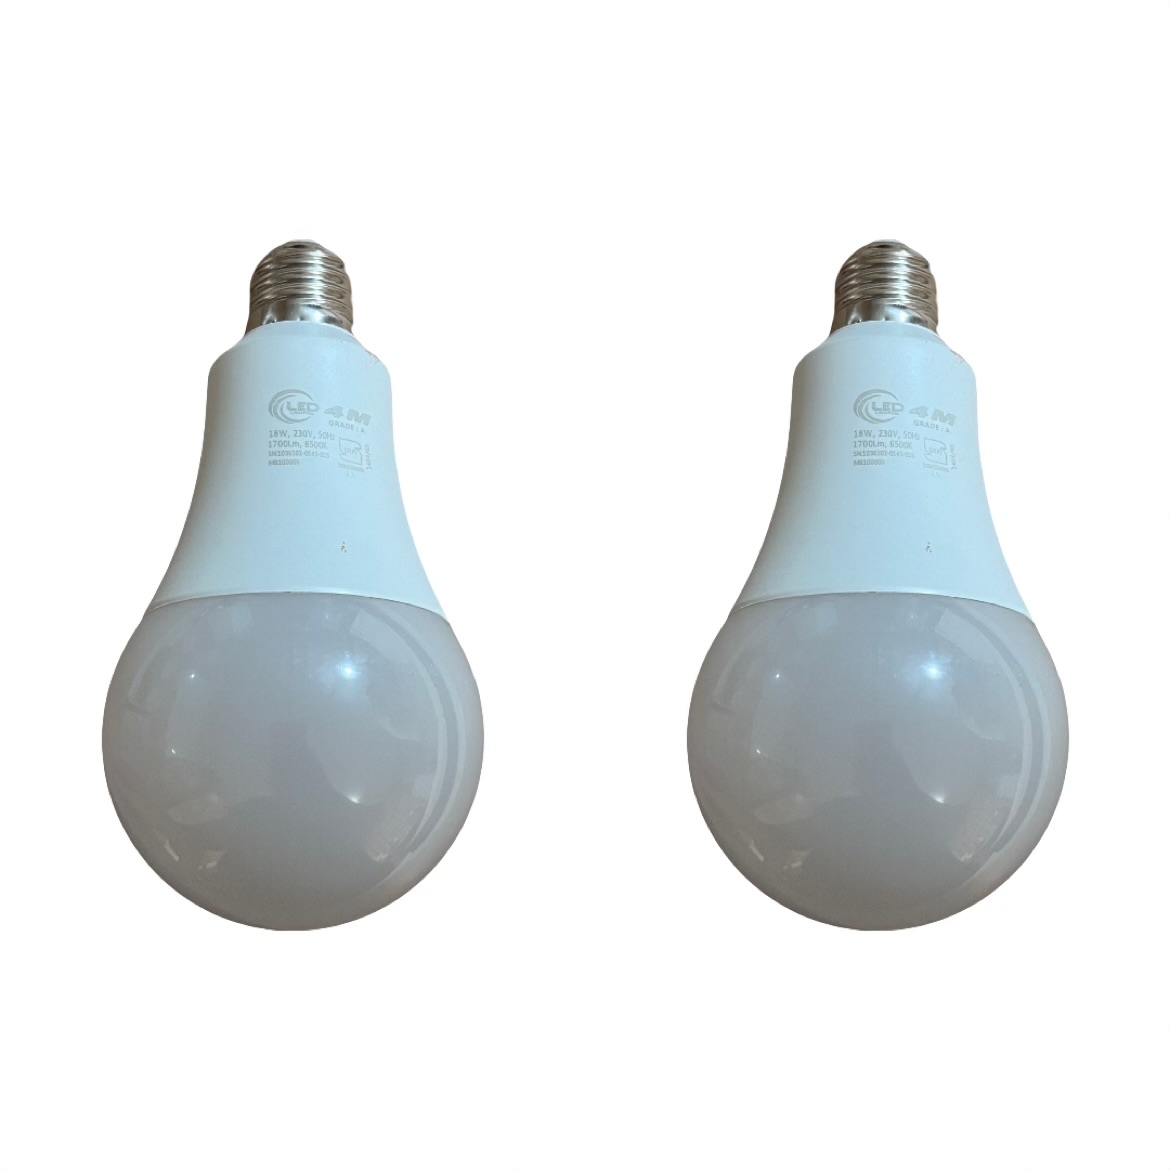 لامپ 15 وات فورام 4ام مدل حبابی پایه E27 بسته 2 عددی